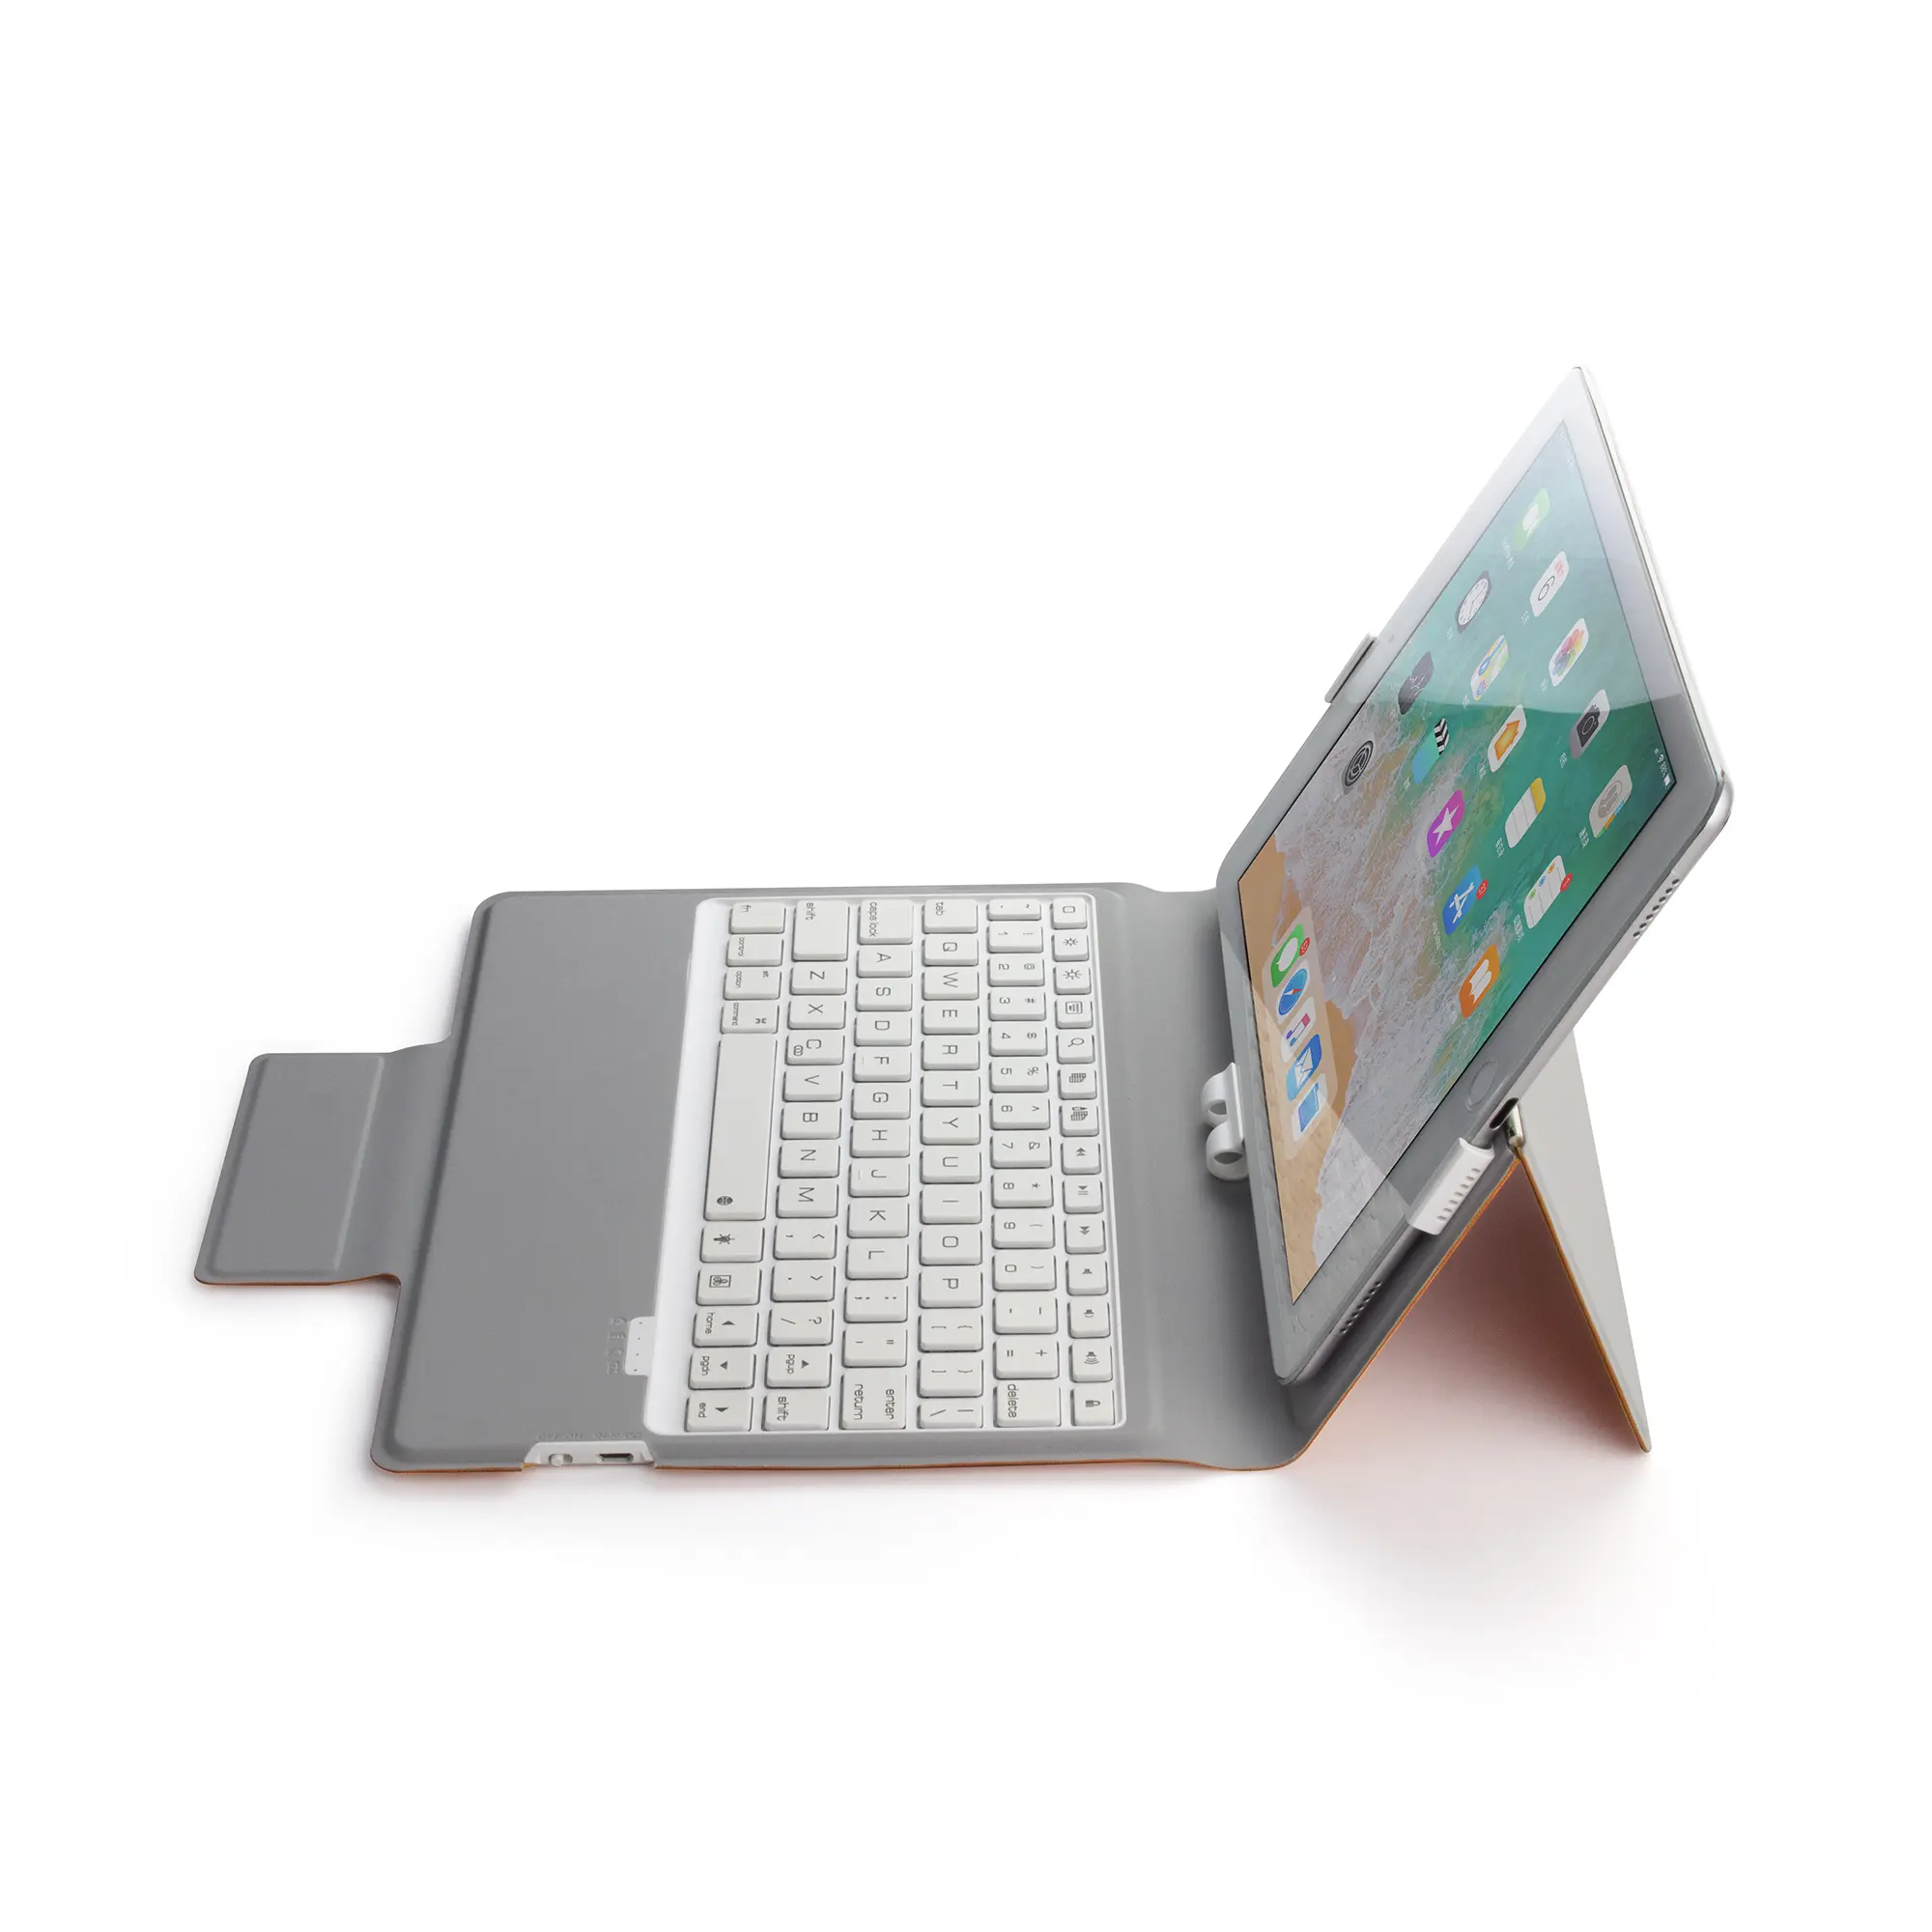 OEM geaccepteerd lederen tablet beschermende keyboard case voor nieuwe ipad 9 9.7 air 2